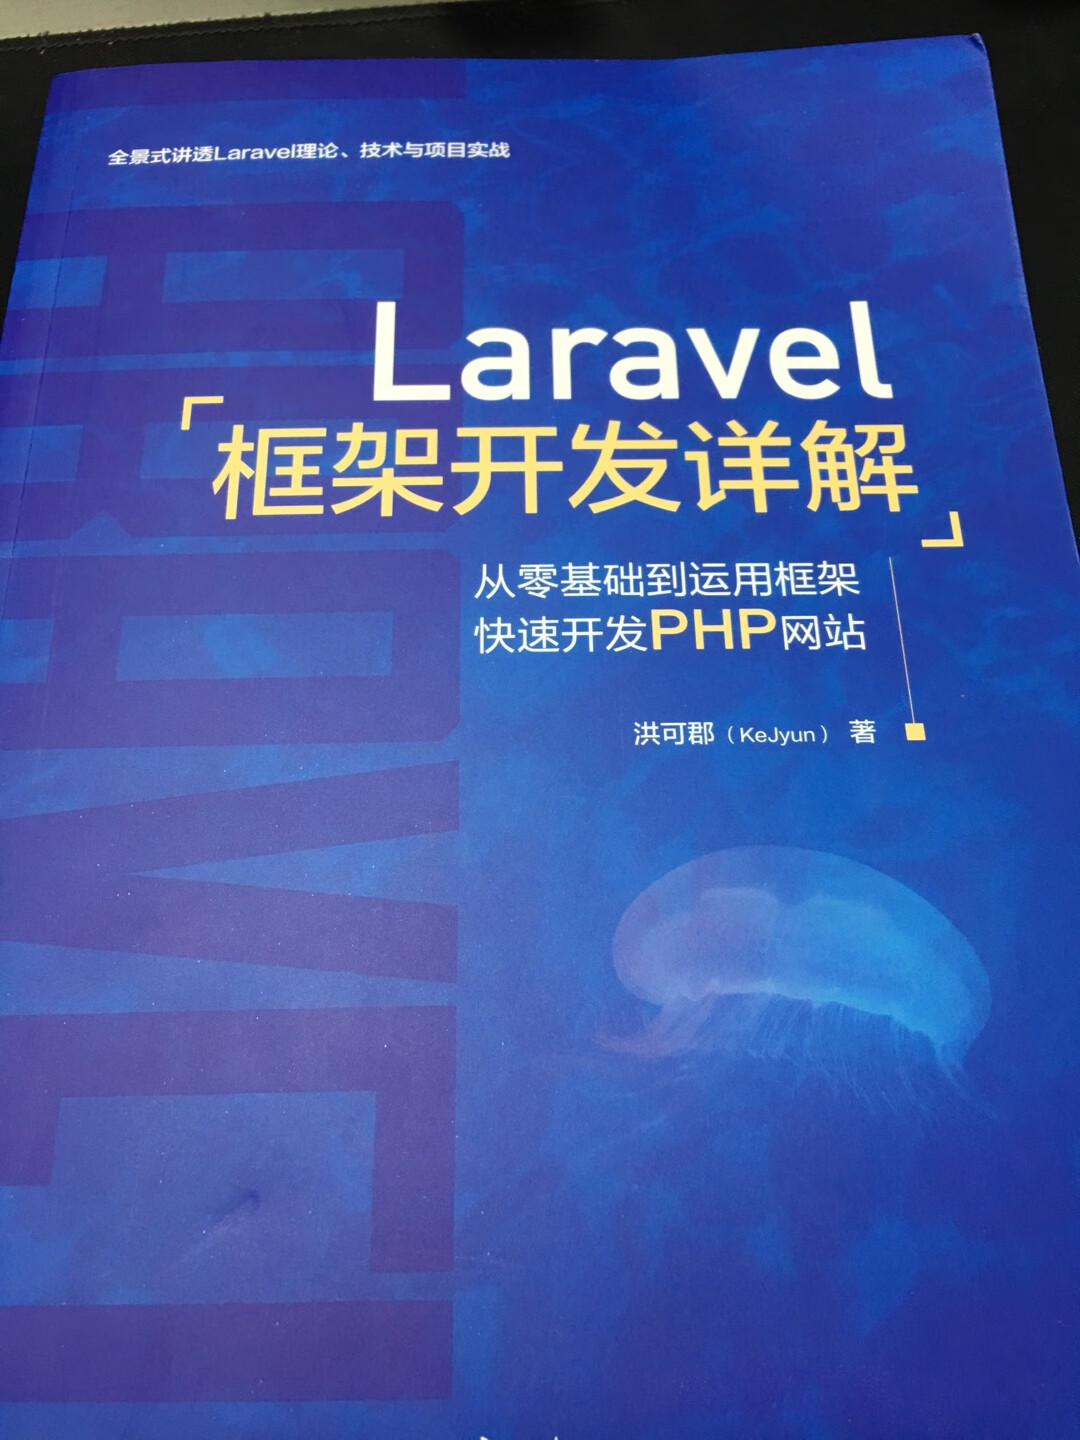 台湾的laravel社区很活跃，作者也听说过，很出名！他的作品，值得一看